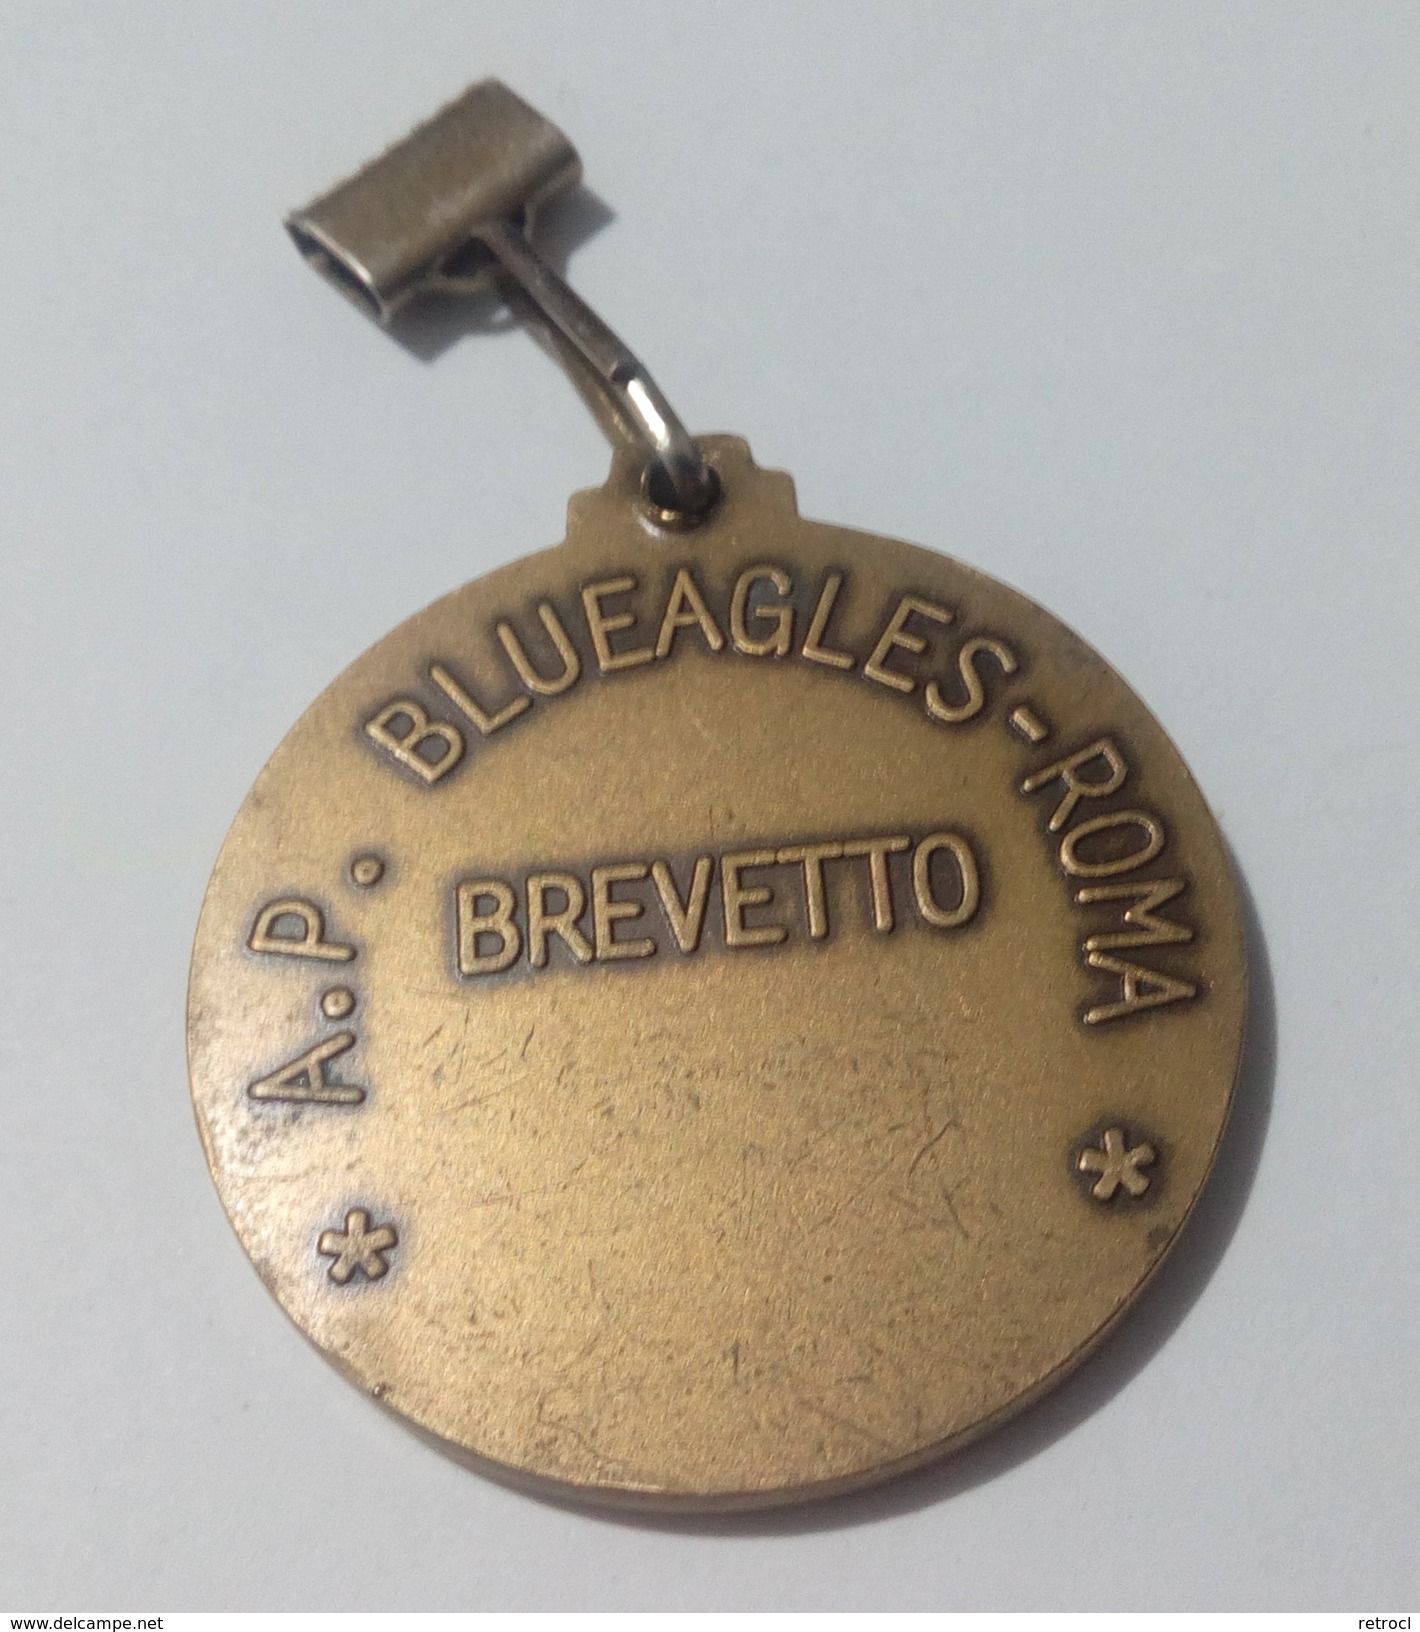 Medaglia A.p. Blueagles-roma Brevetto - Swimming - Professionals/Firms